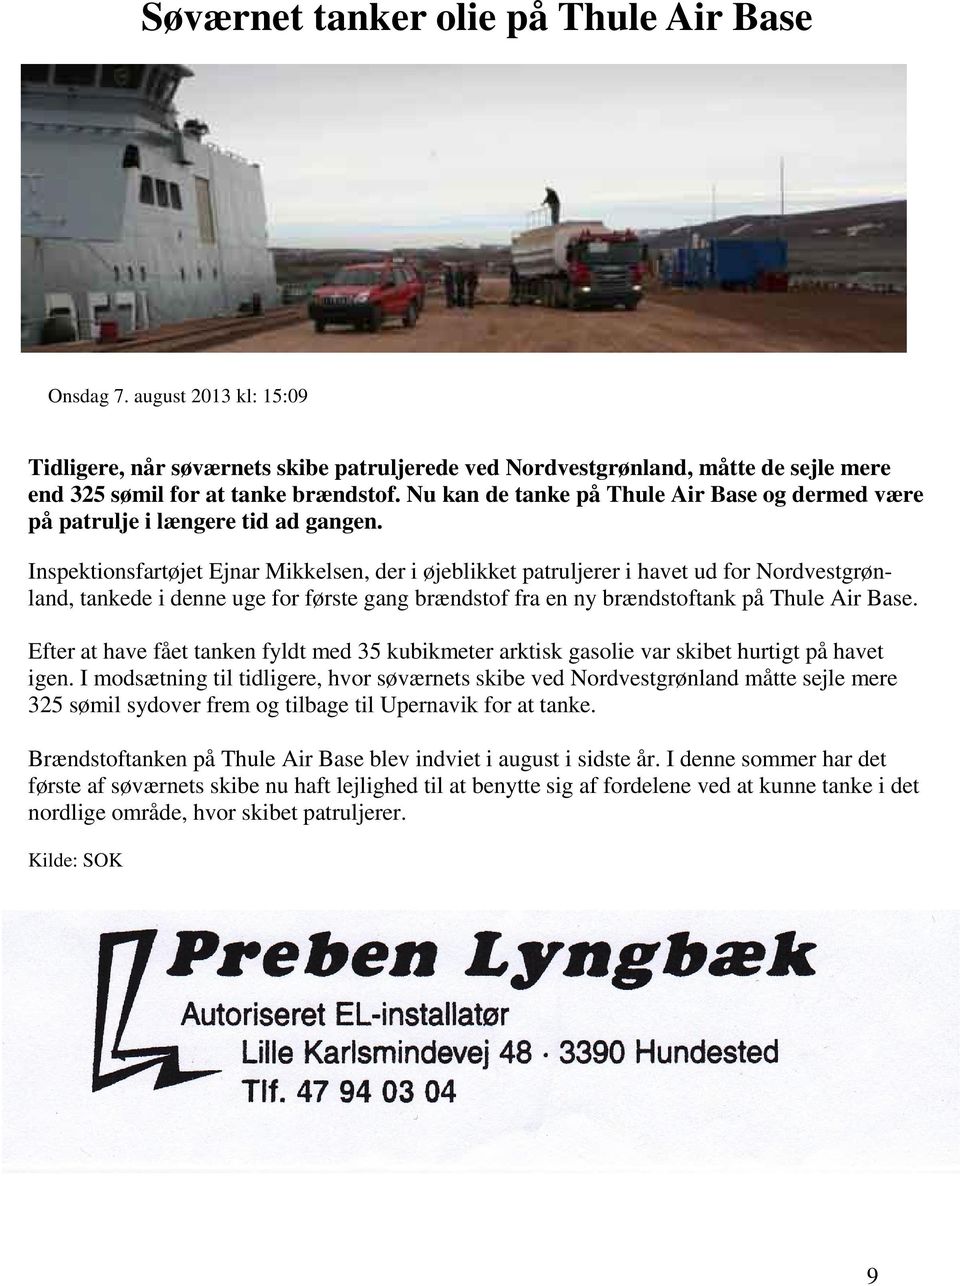 Inspektionsfartøjet Ejnar Mikkelsen, der i øjeblikket patruljerer i havet ud for Nordvestgrønland, tankede i denne uge for første gang brændstof fra en ny brændstoftank på Thule Air Base.